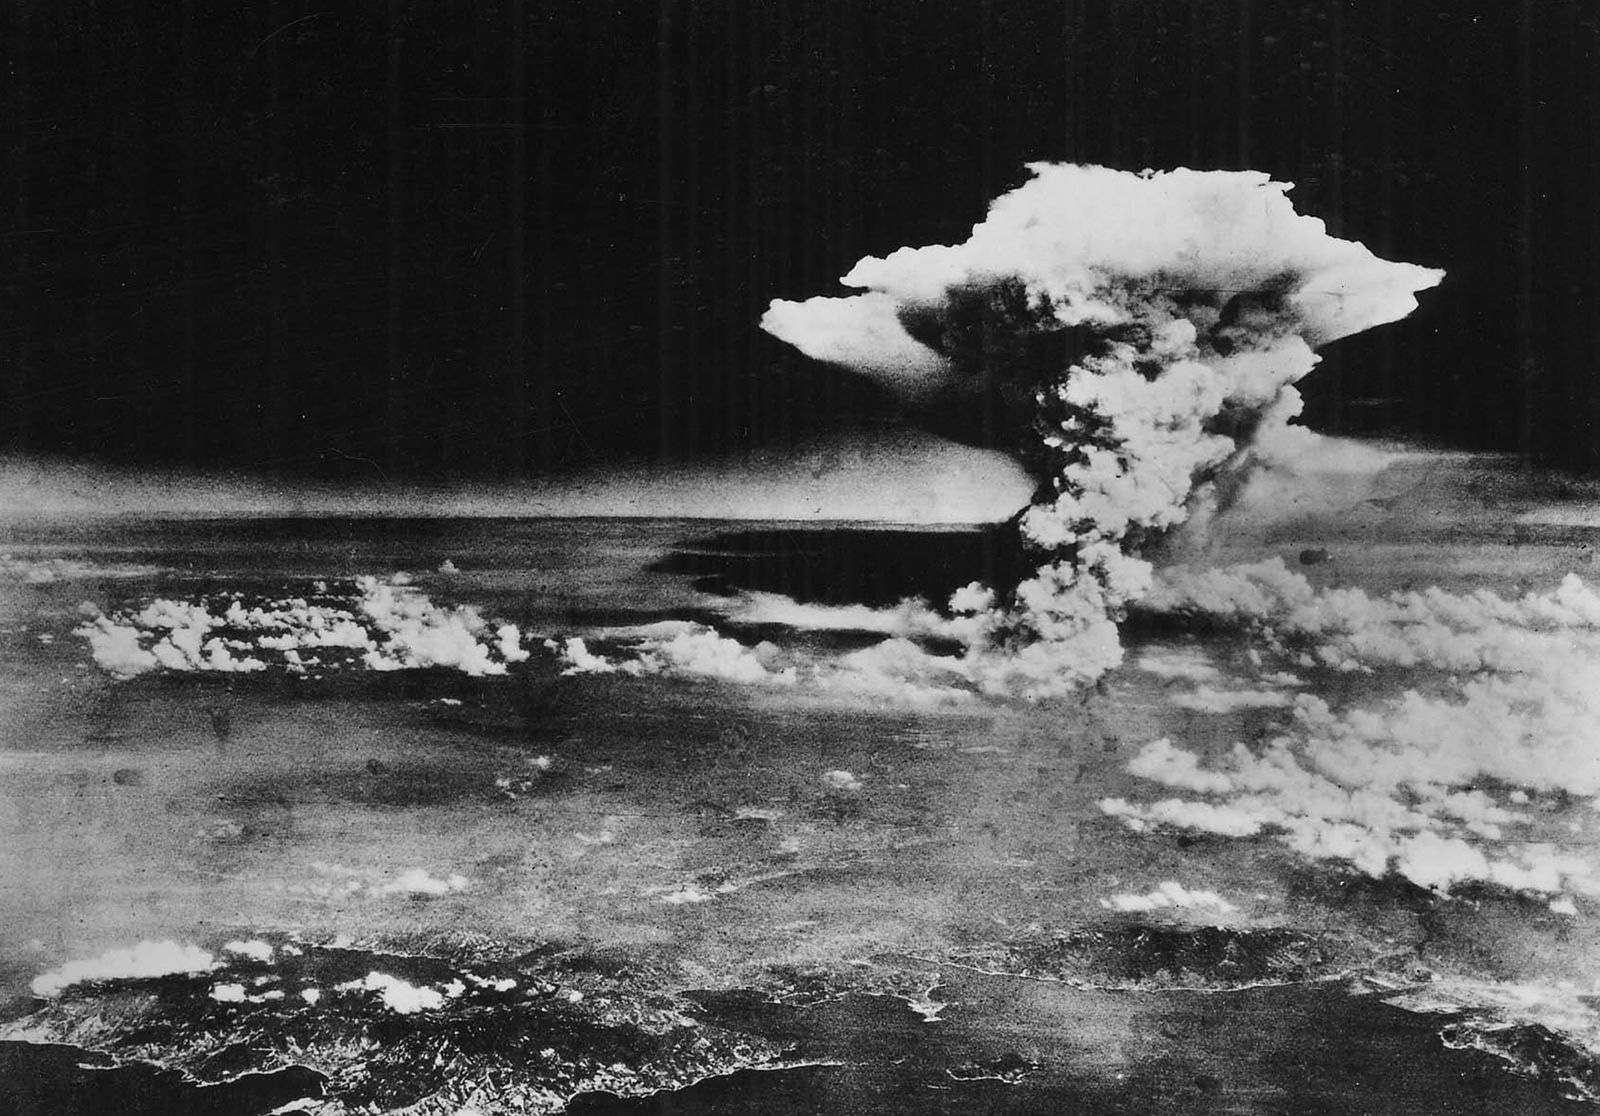 Hiroshima, Nagasaki: Trải nghiệm một chuyến đi đến những thành phố hiện đại nhưng đầy lịch sử và bi kịch của nước Nhật với Hiroshima và Nagasaki. Hình ảnh cho thấy sự đổi mới của các thành phố này sau khi bị tàn phá bởi hai đợt tấn công của quân đội Mỹ.